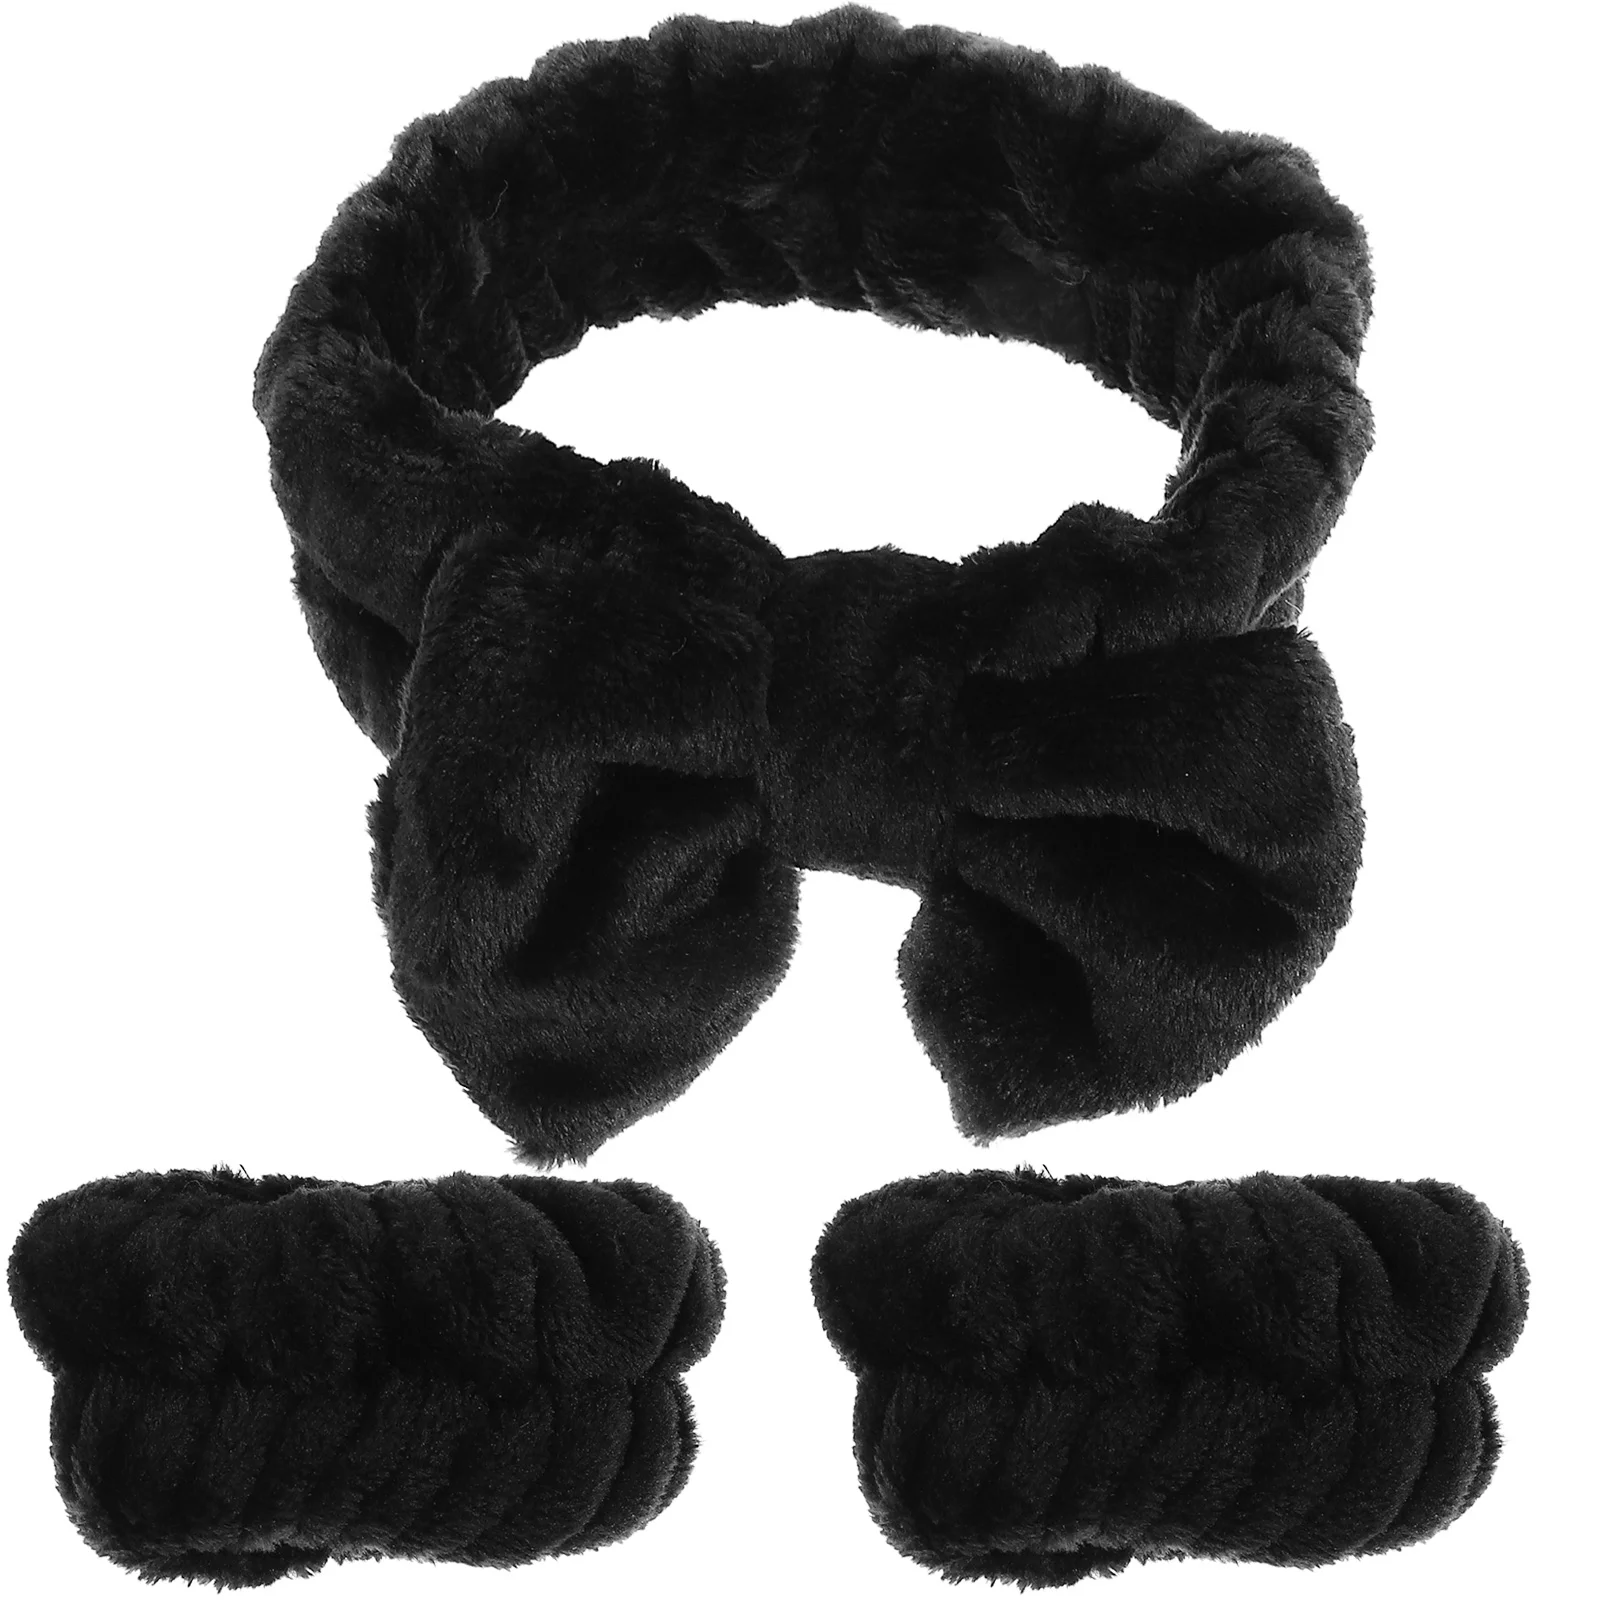 

Повязка на голову с бабочкой, черная эластичная повязка на запястье, тканевые повязки для волос на лицо